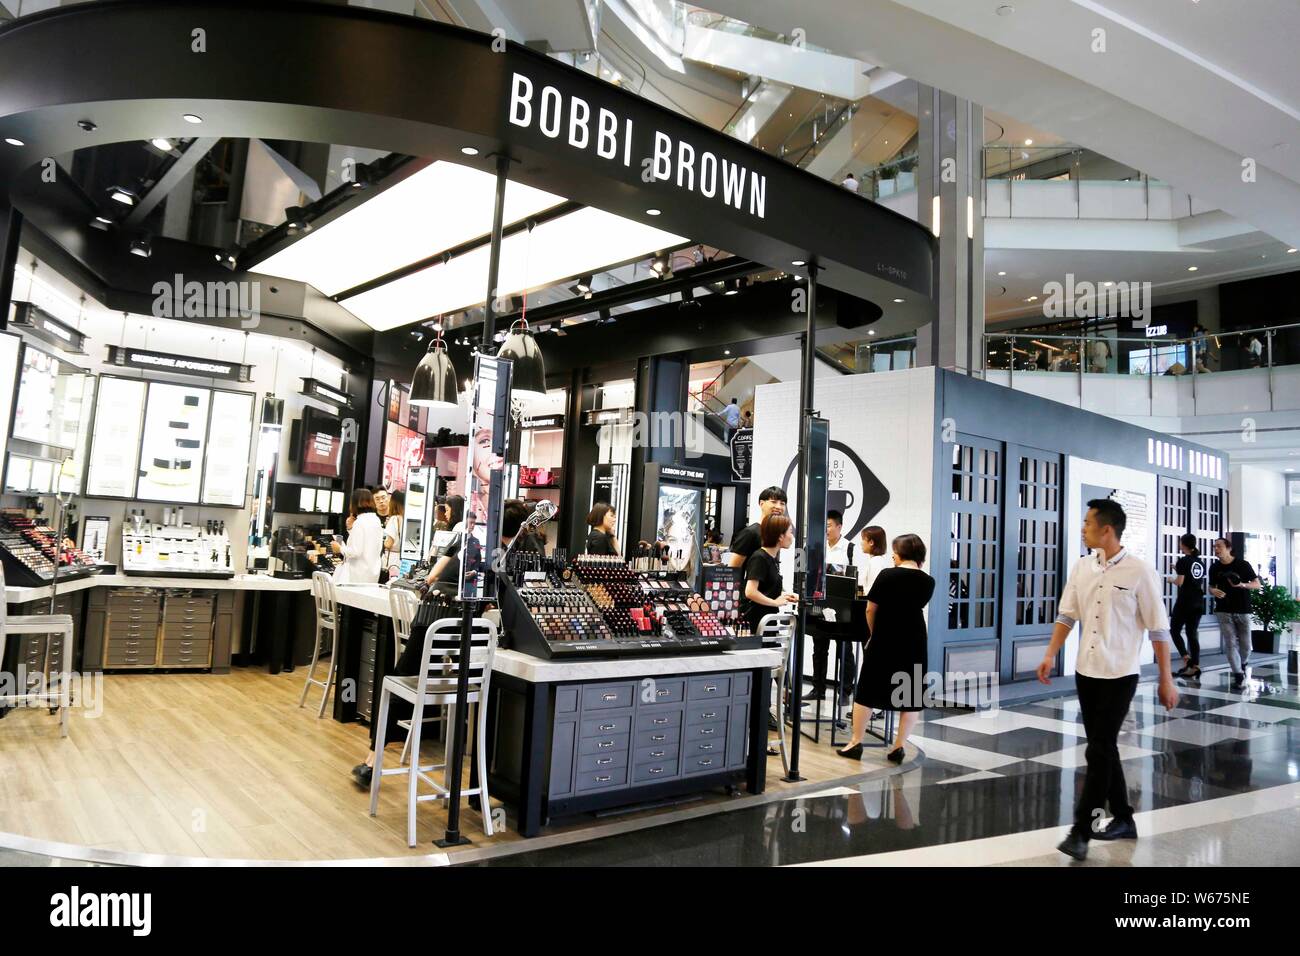 Archivo-clientes camina más allá de un flash mob cafe de American marca de cosméticos  Bobbi Brown en un centro comercial de Shanghai, China, 22 de mayo de 2017.  Nosotros cosmética Fotografía de